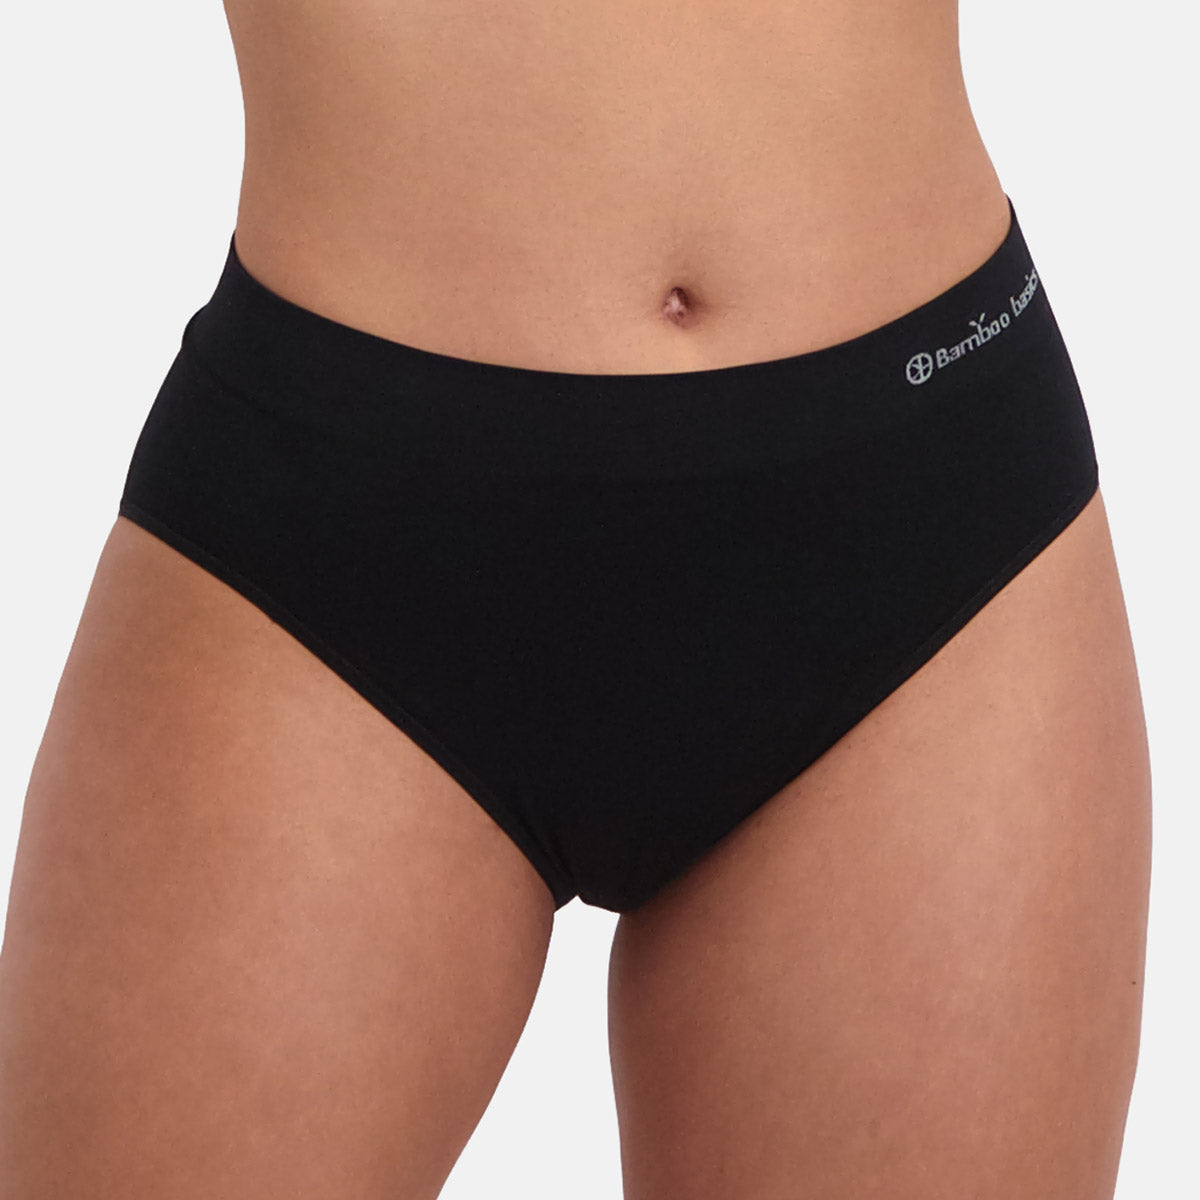 Women's Bamboo/Cotton High Leg Brief Style Underwear Black Color - 3-p –  Spun Bamboo